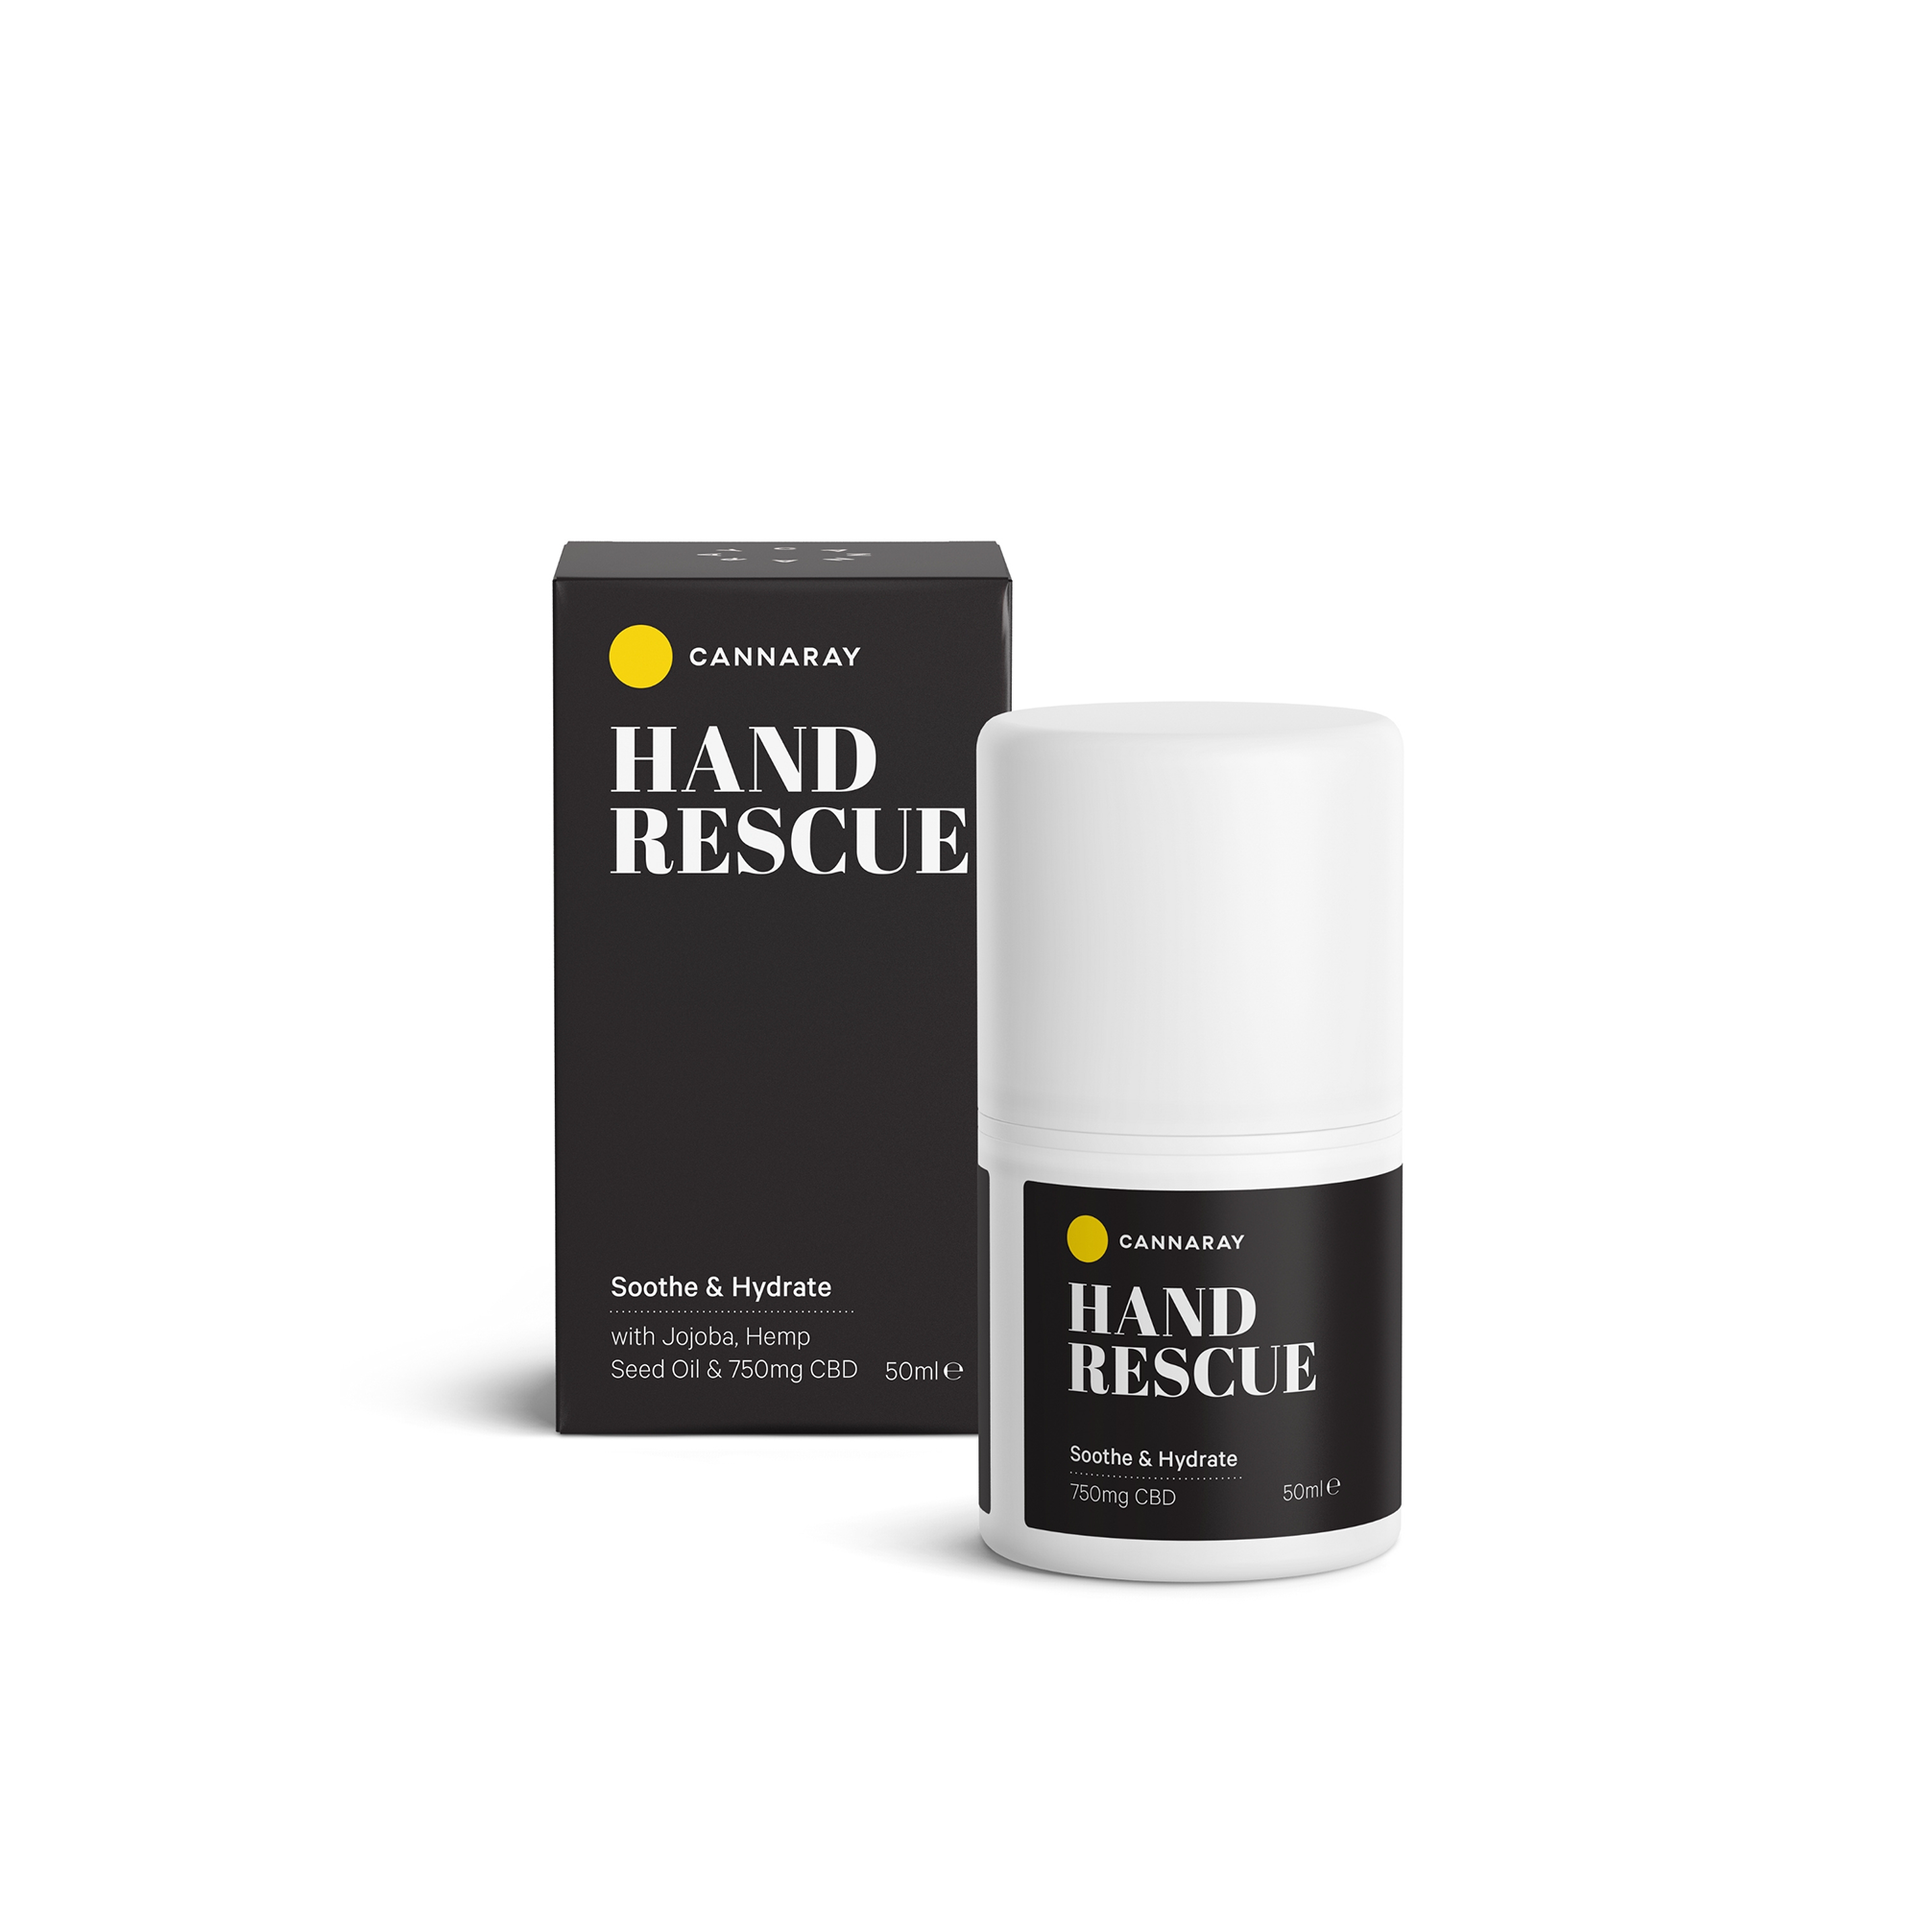 Hand Rescue CBD Hand Cream